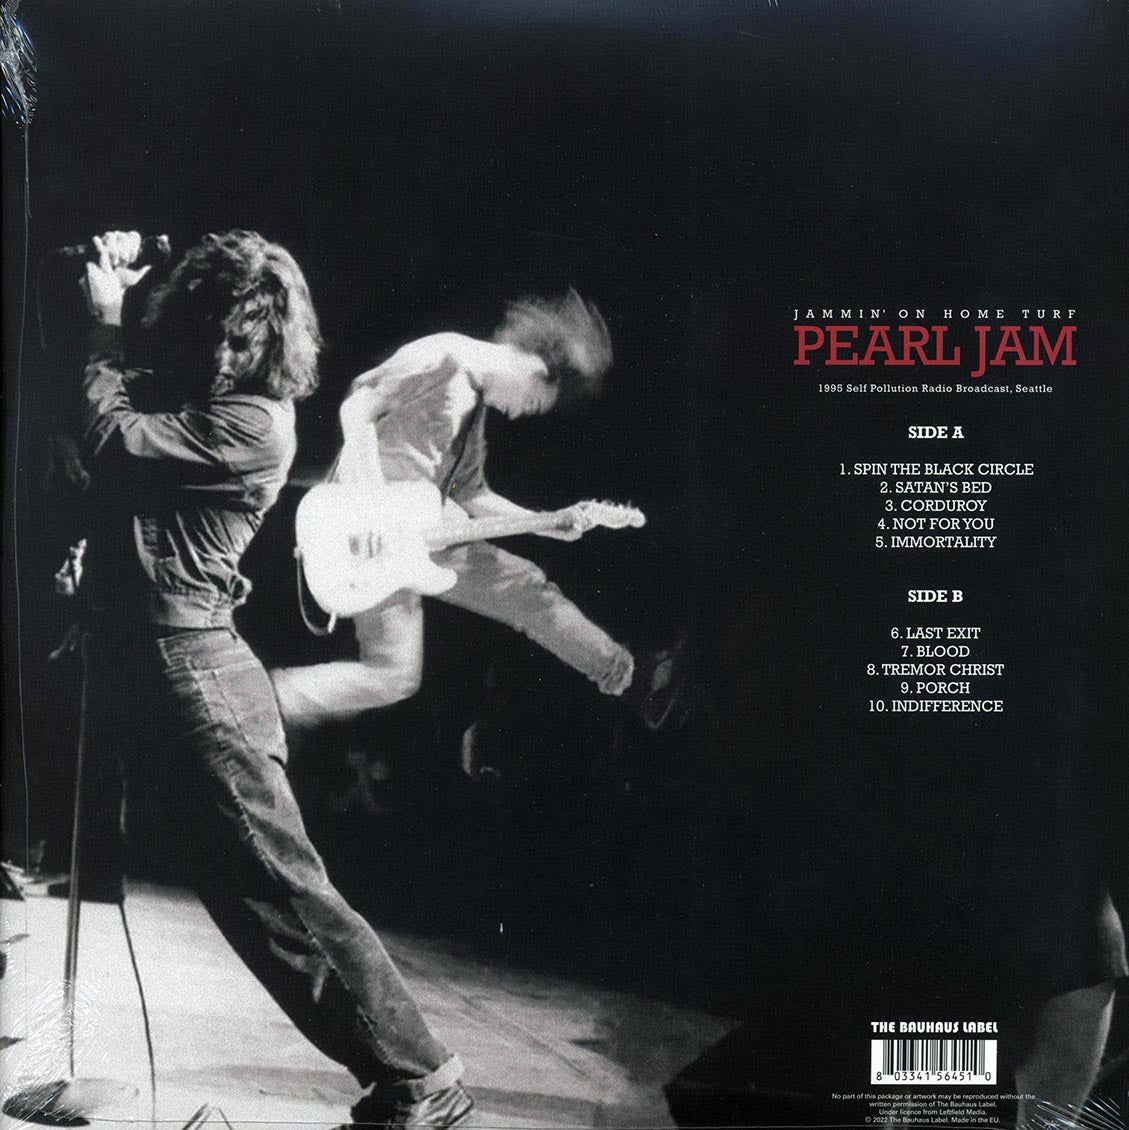 Pearl Jam - Jammin' On Home Turf: 1995 Self Pollution Radio Broadcast, Seattle - Vinyl LP, LP